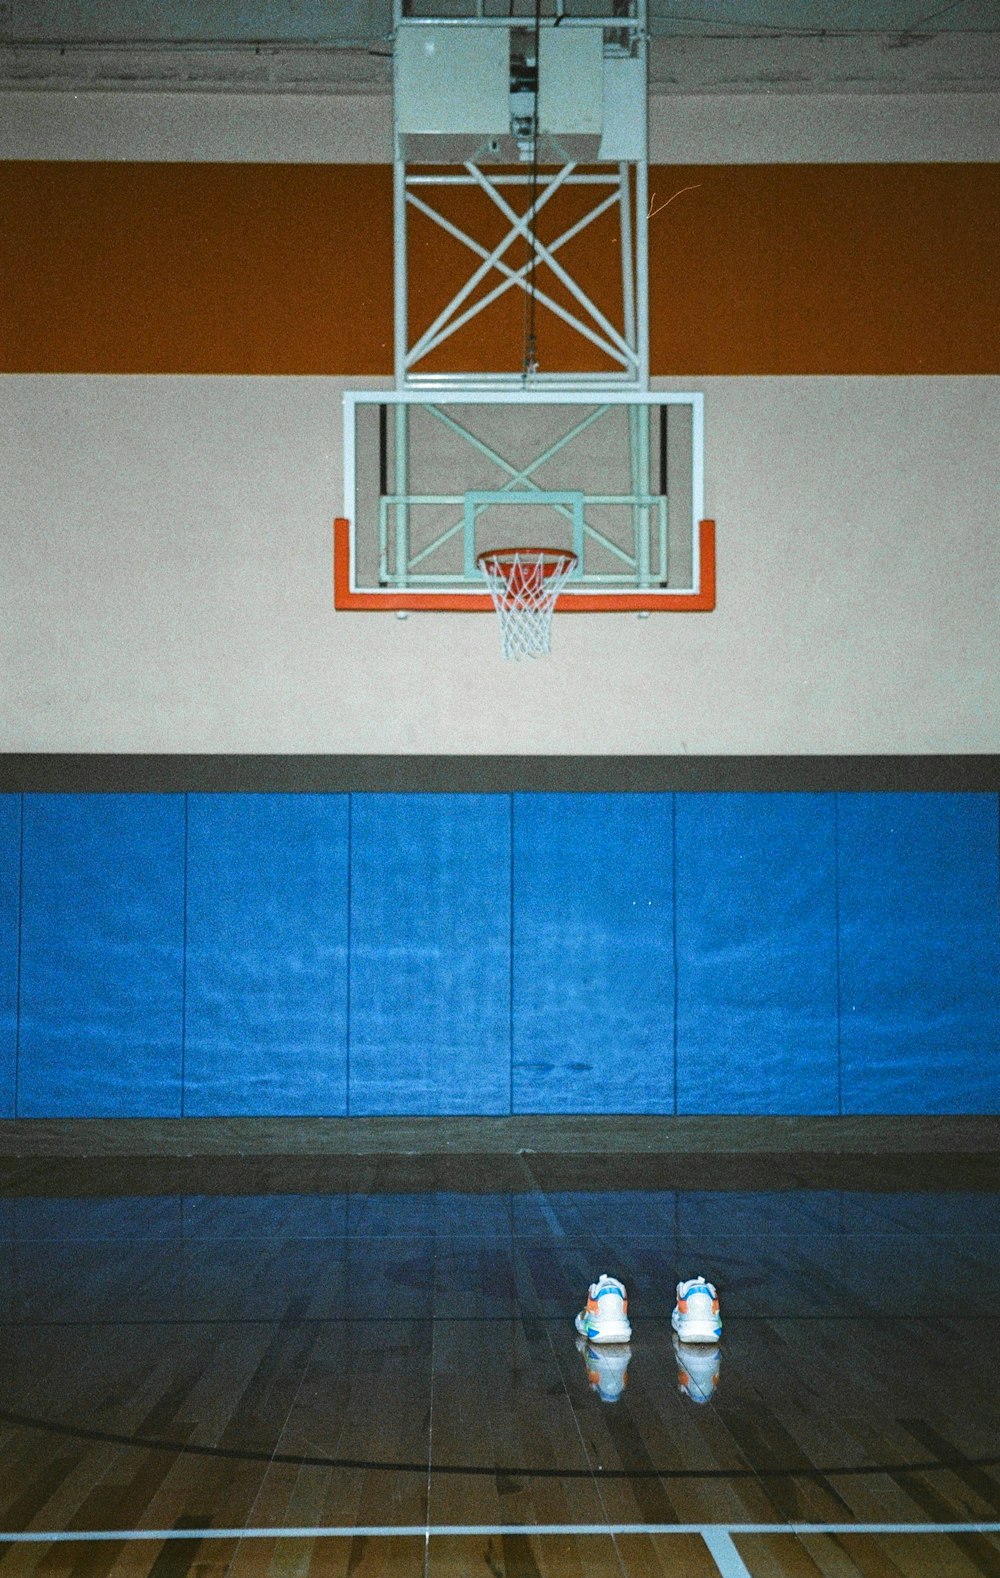 a basketball hoop hangs above a basketball court